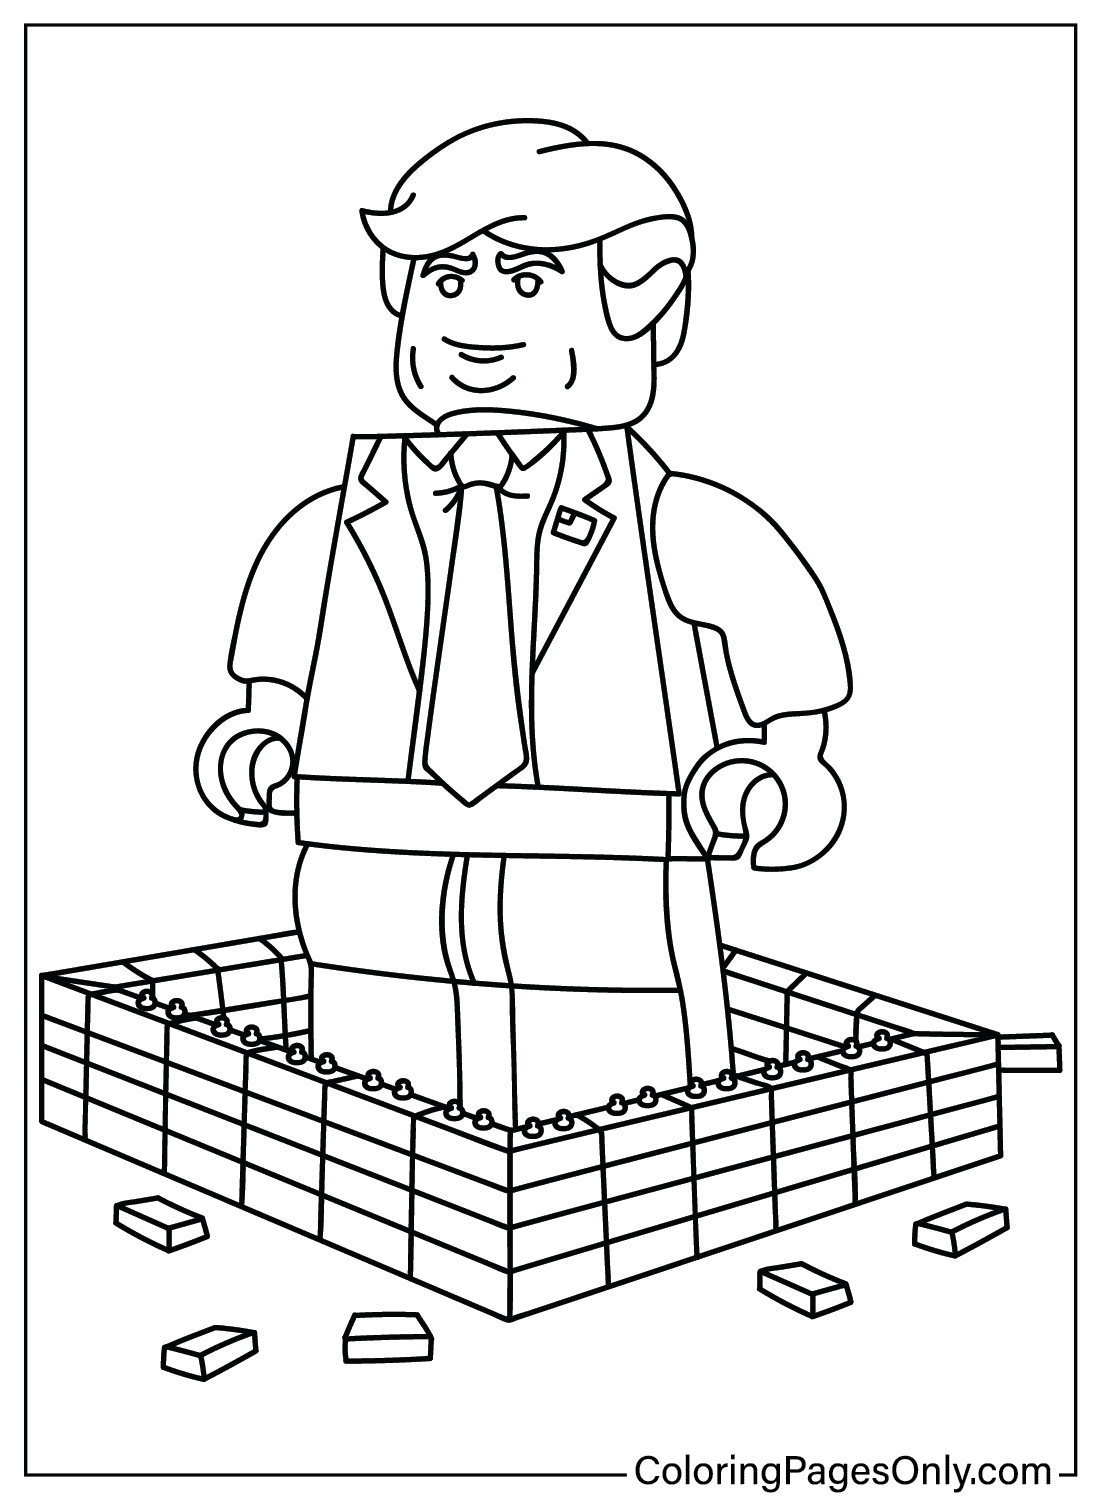 Lego Donald Trump kleurplaat afdrukbaar van Donald Trump